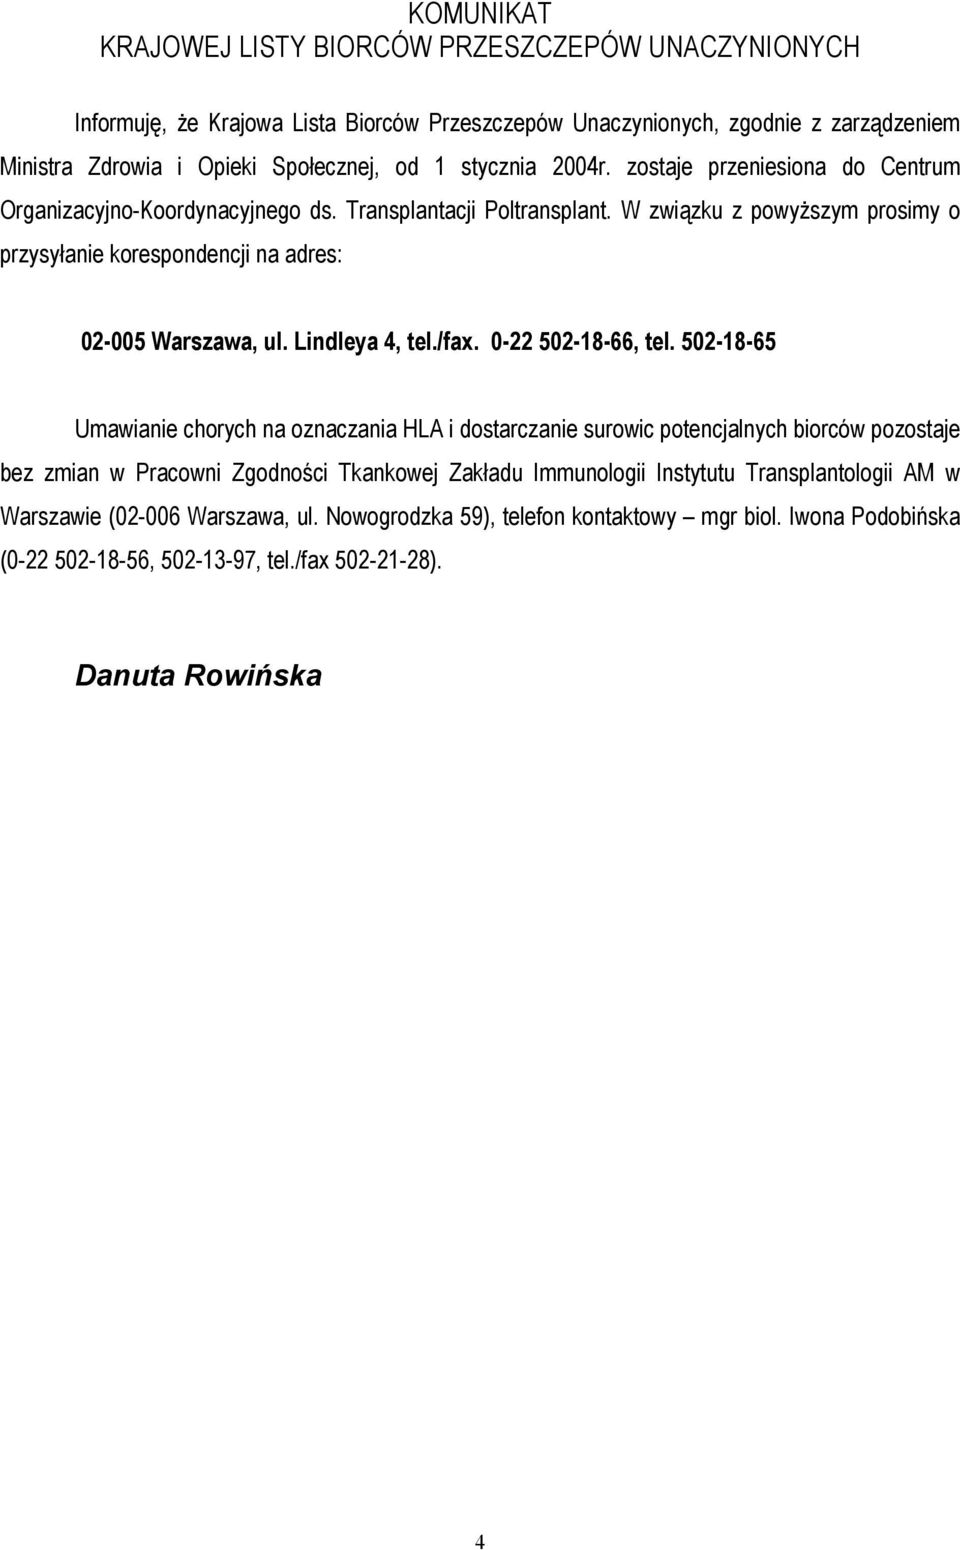 W związku z powyższym prosimy o przysyłanie korespondencji na adres: 02-005 Warszawa, ul. Lindleya 4, tel./fax. 0-22 502-18-66, tel.